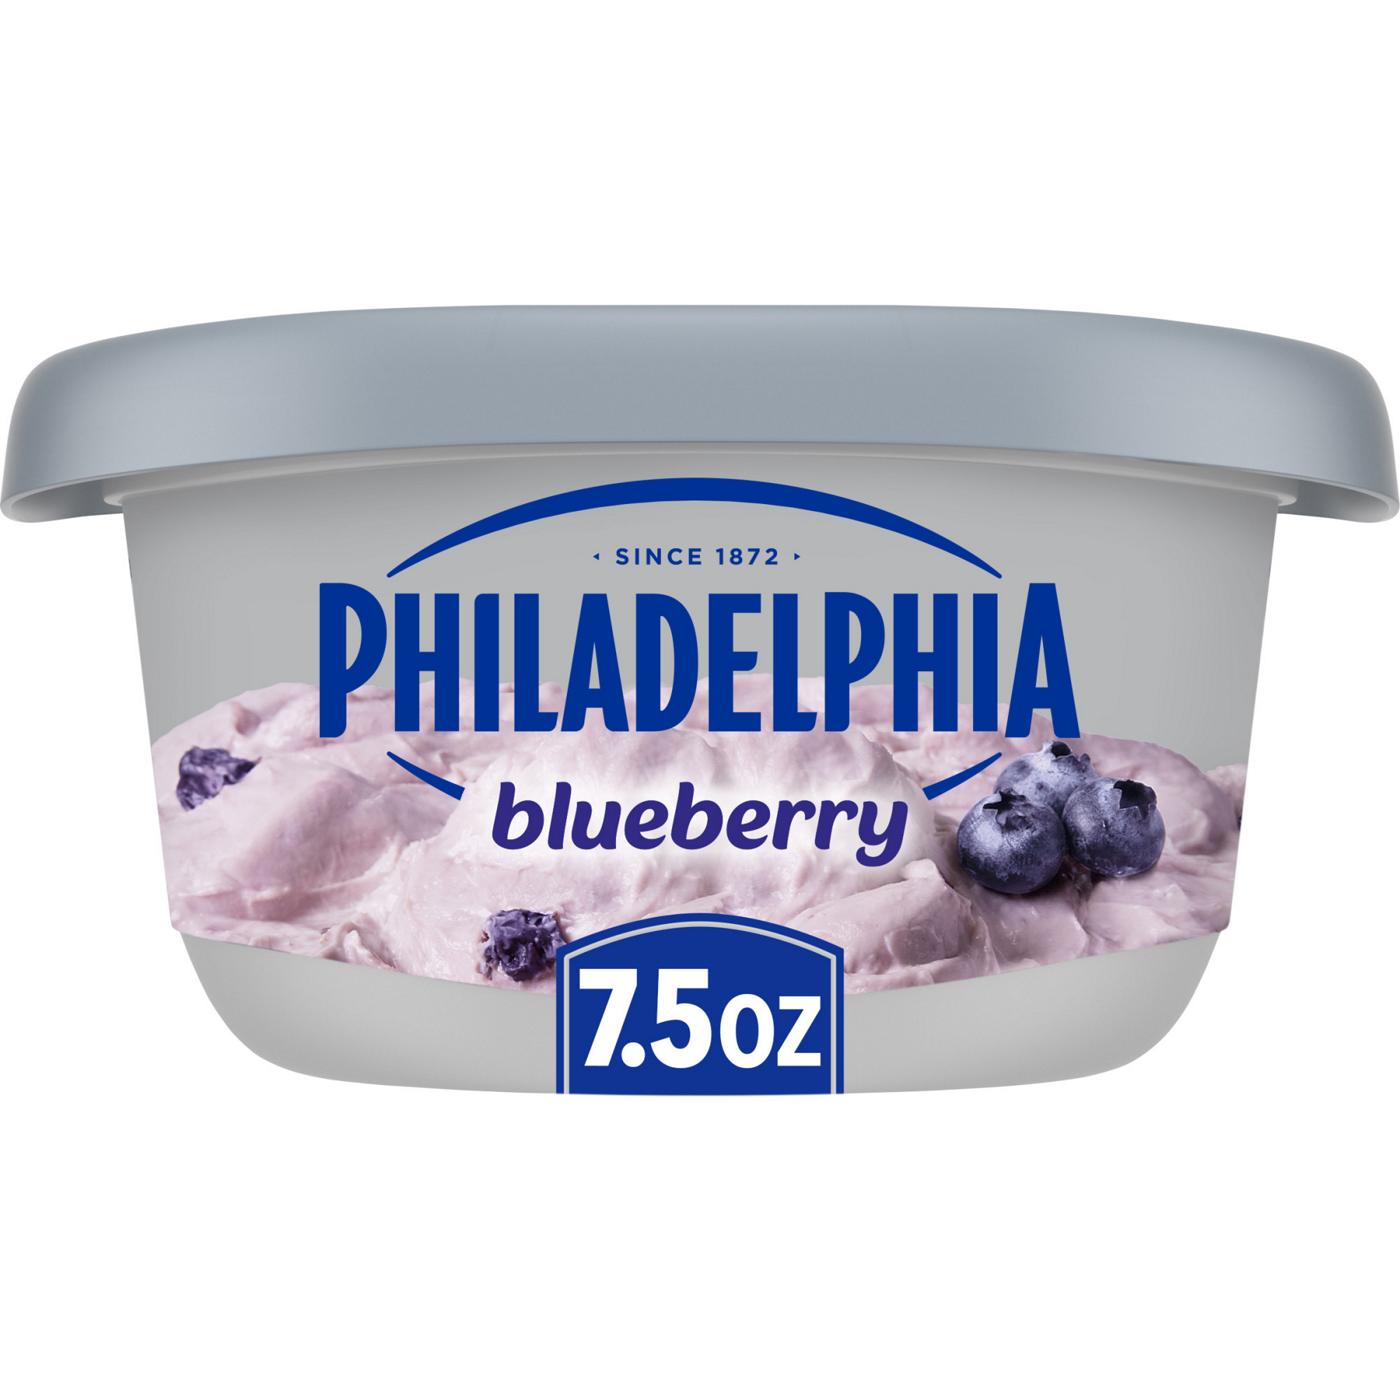 Philadelphia Blueberry Cream Cheese Spread; image 1 of 9